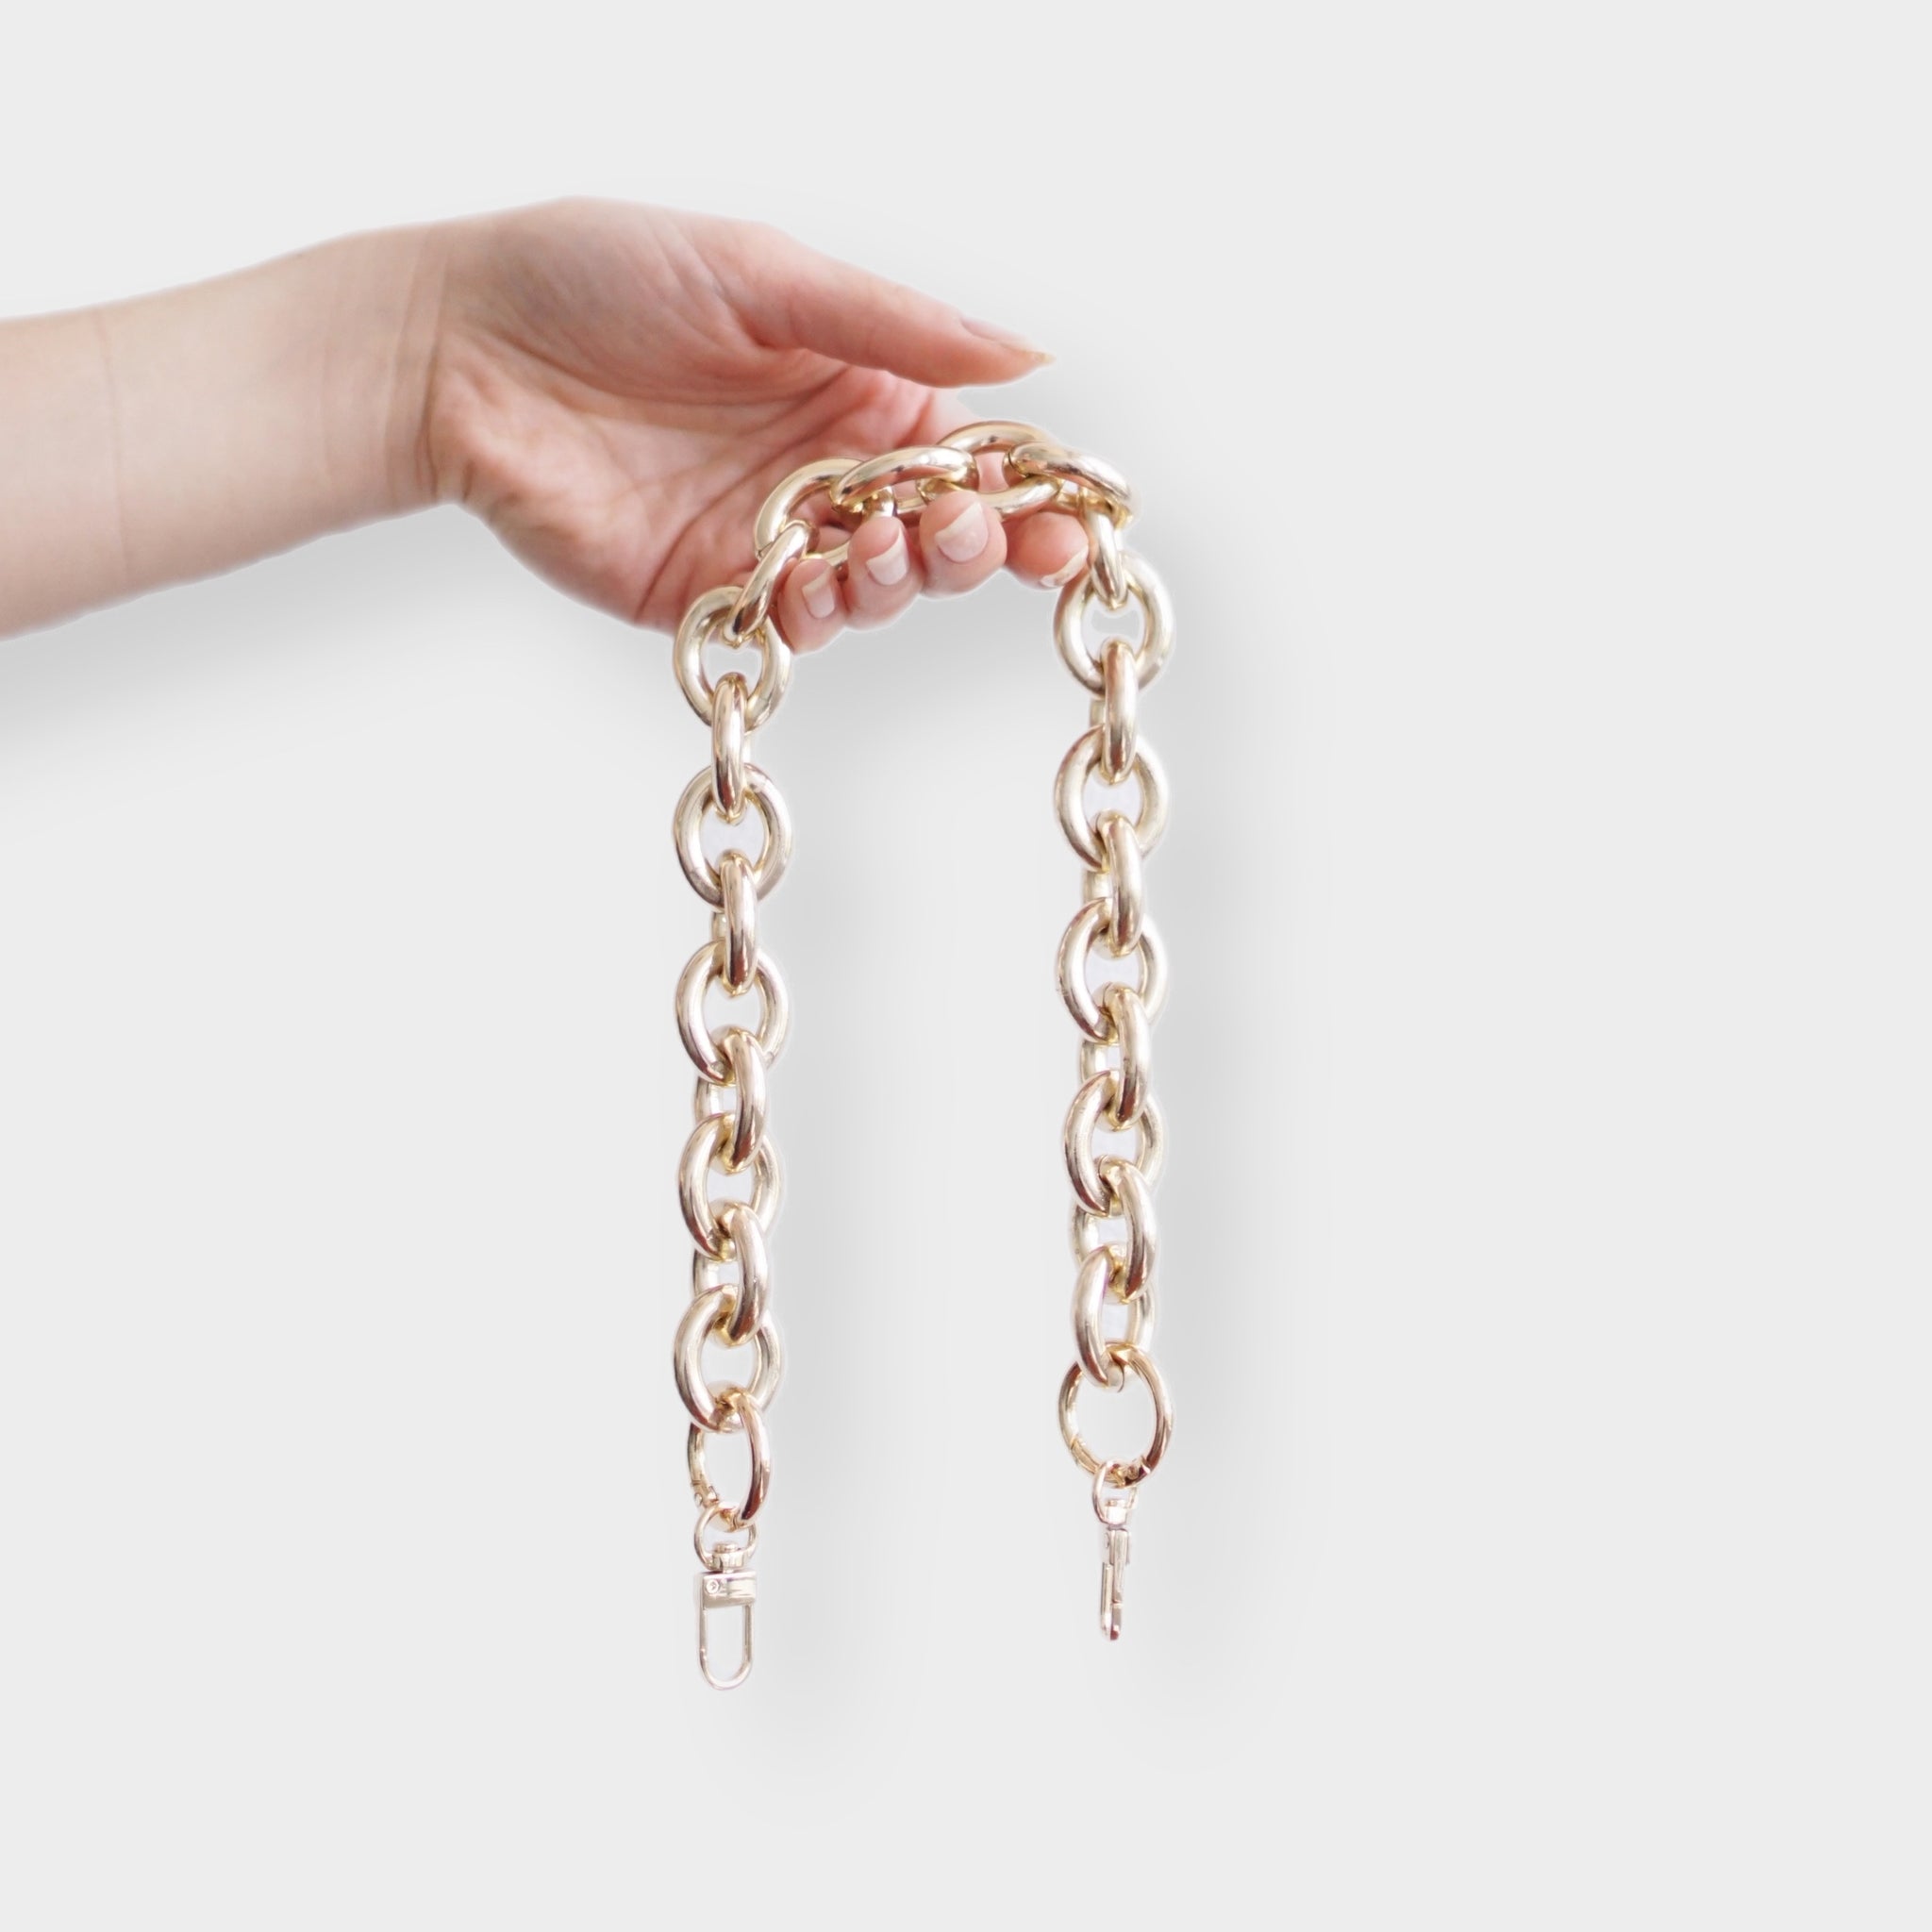 Louis Vuitton Chain Links Bracelet Gold Metal. Size L